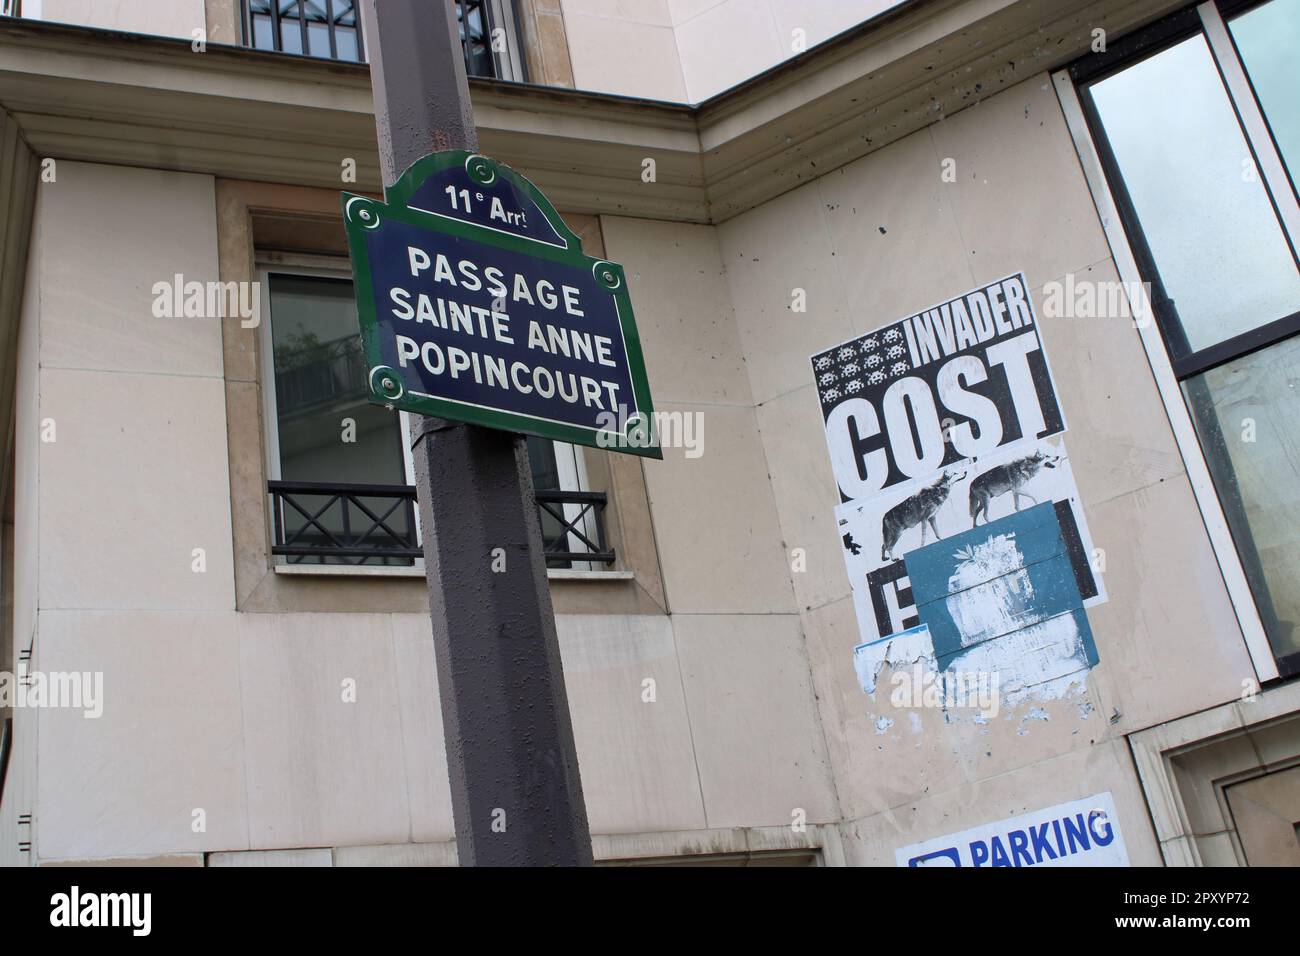 Vue abstraite de la signalisation sur le passage Sainte Anne Popincourt ici situé dans le 11th arrondissement de Paris France. Banque D'Images